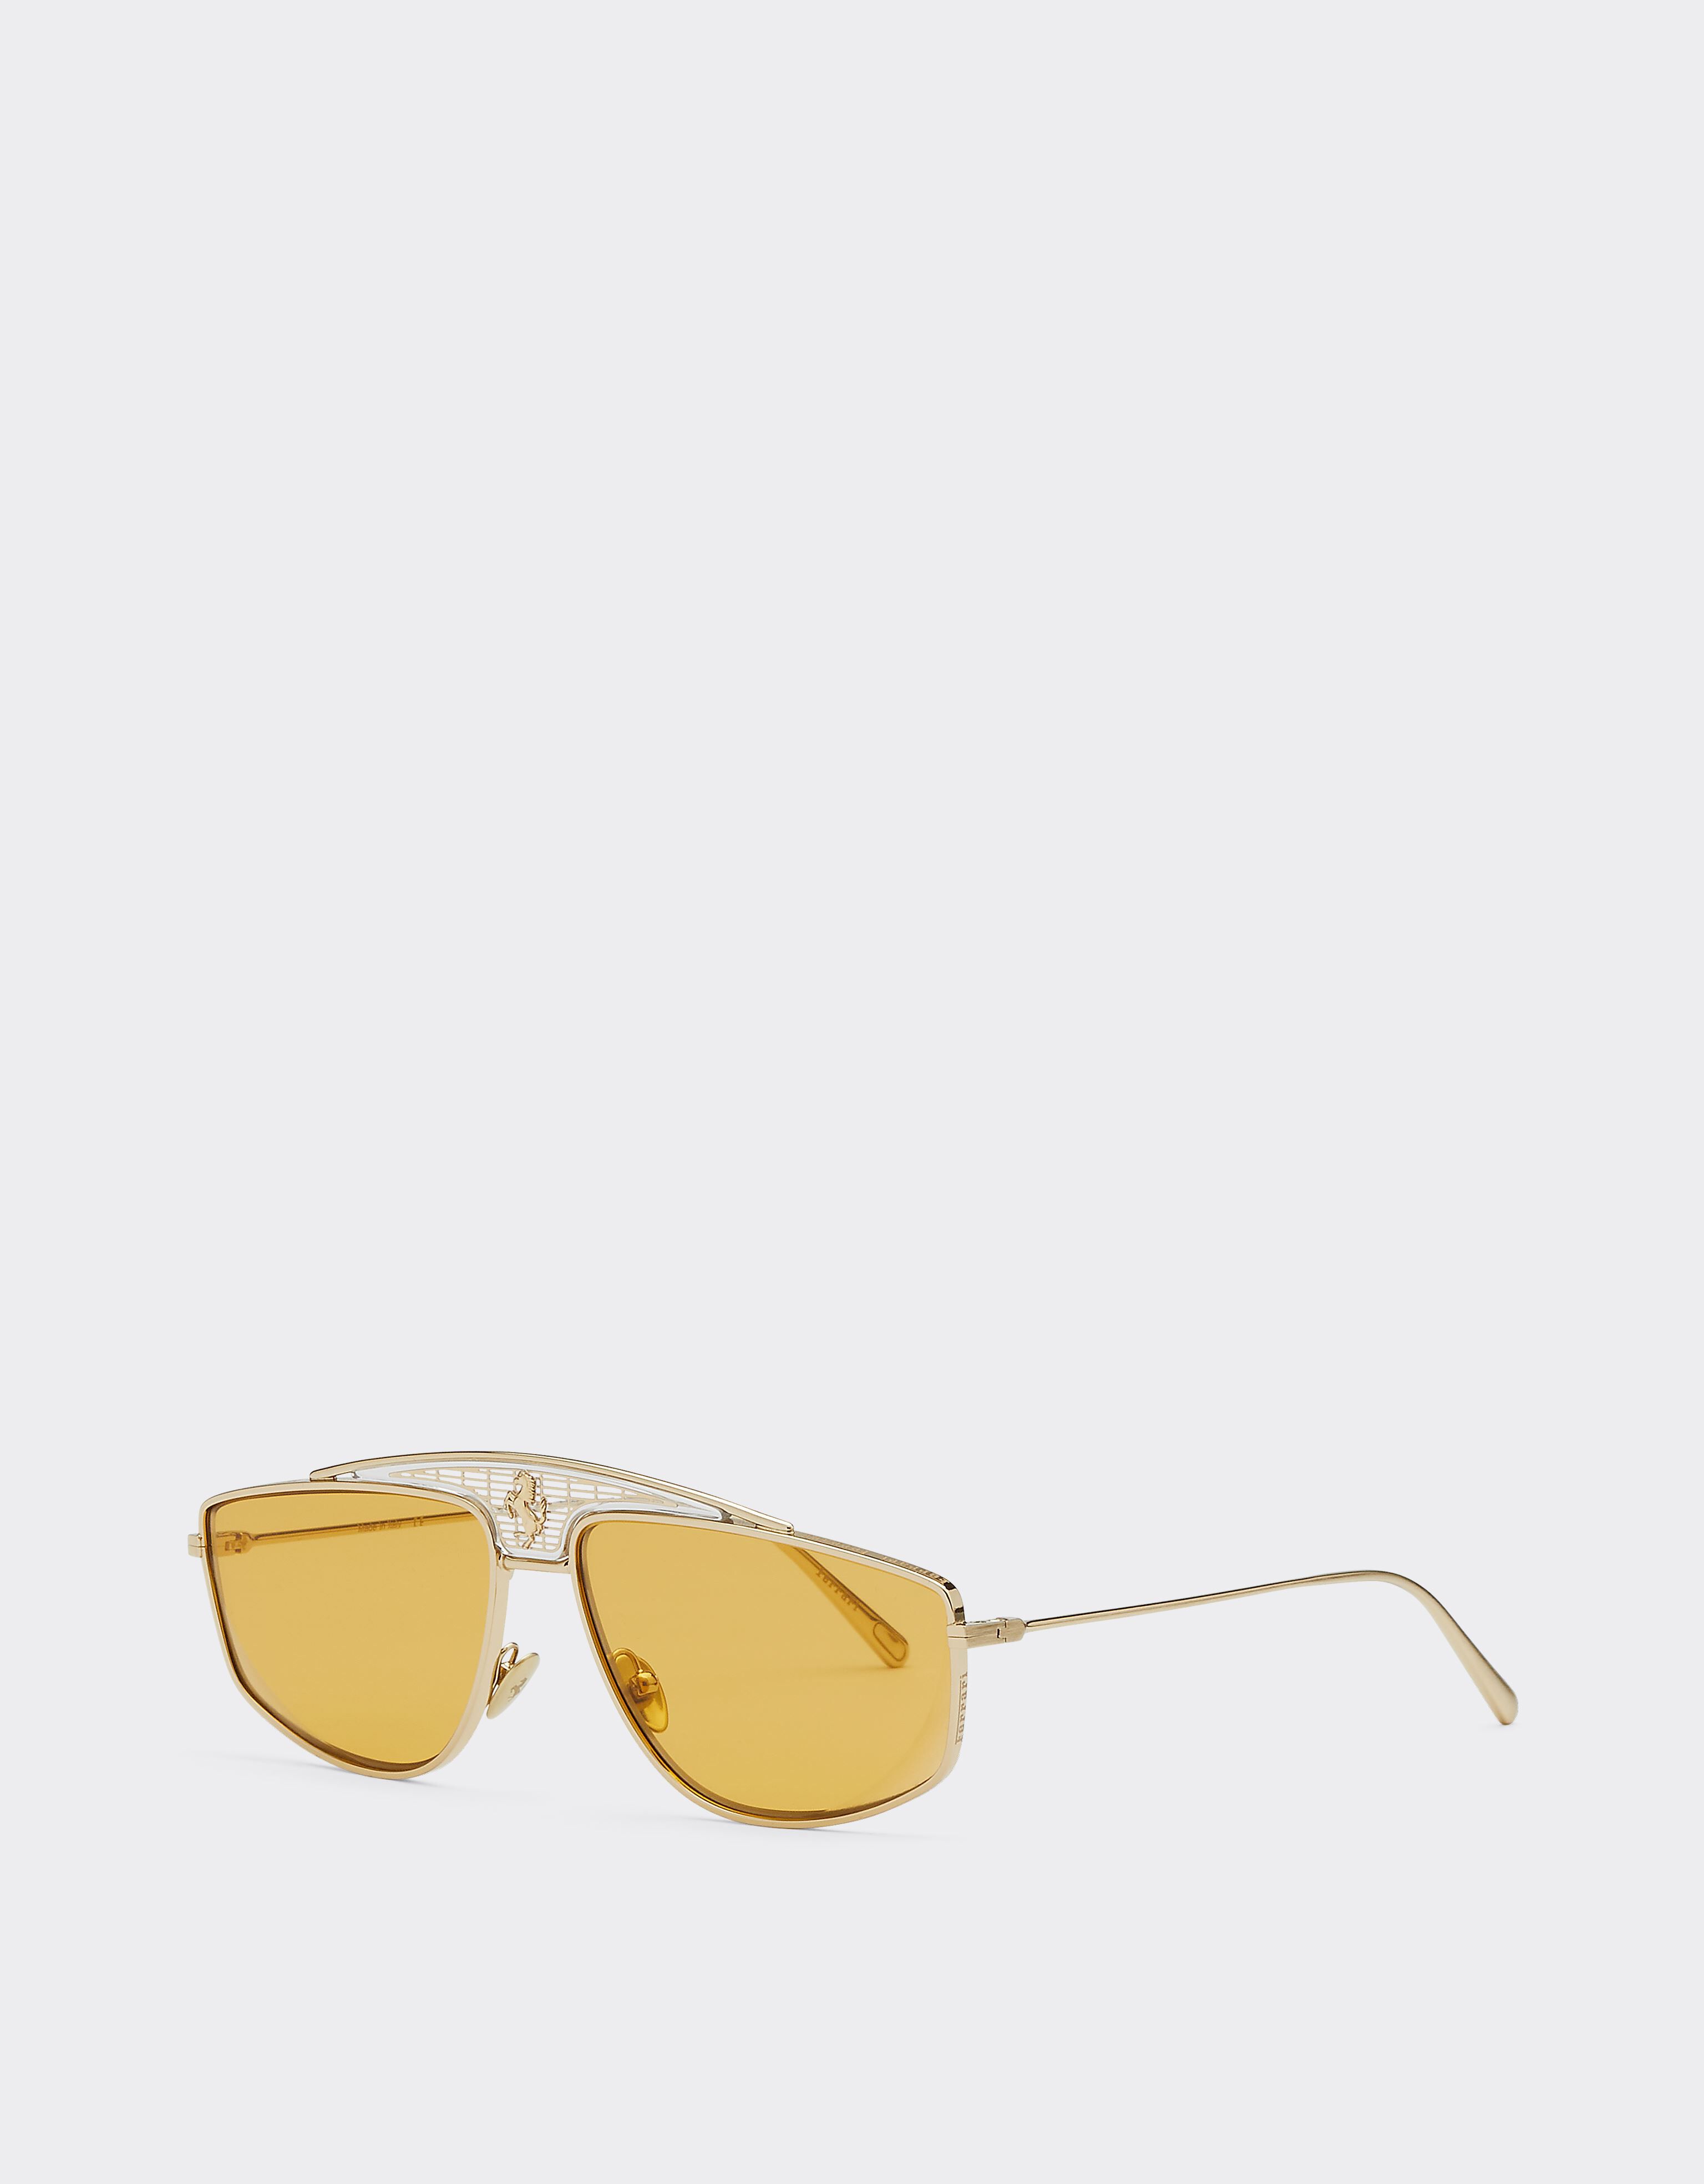 Ferrari Ferrari-Sonnenbrille mit gelben Gläsern Gold F0411f